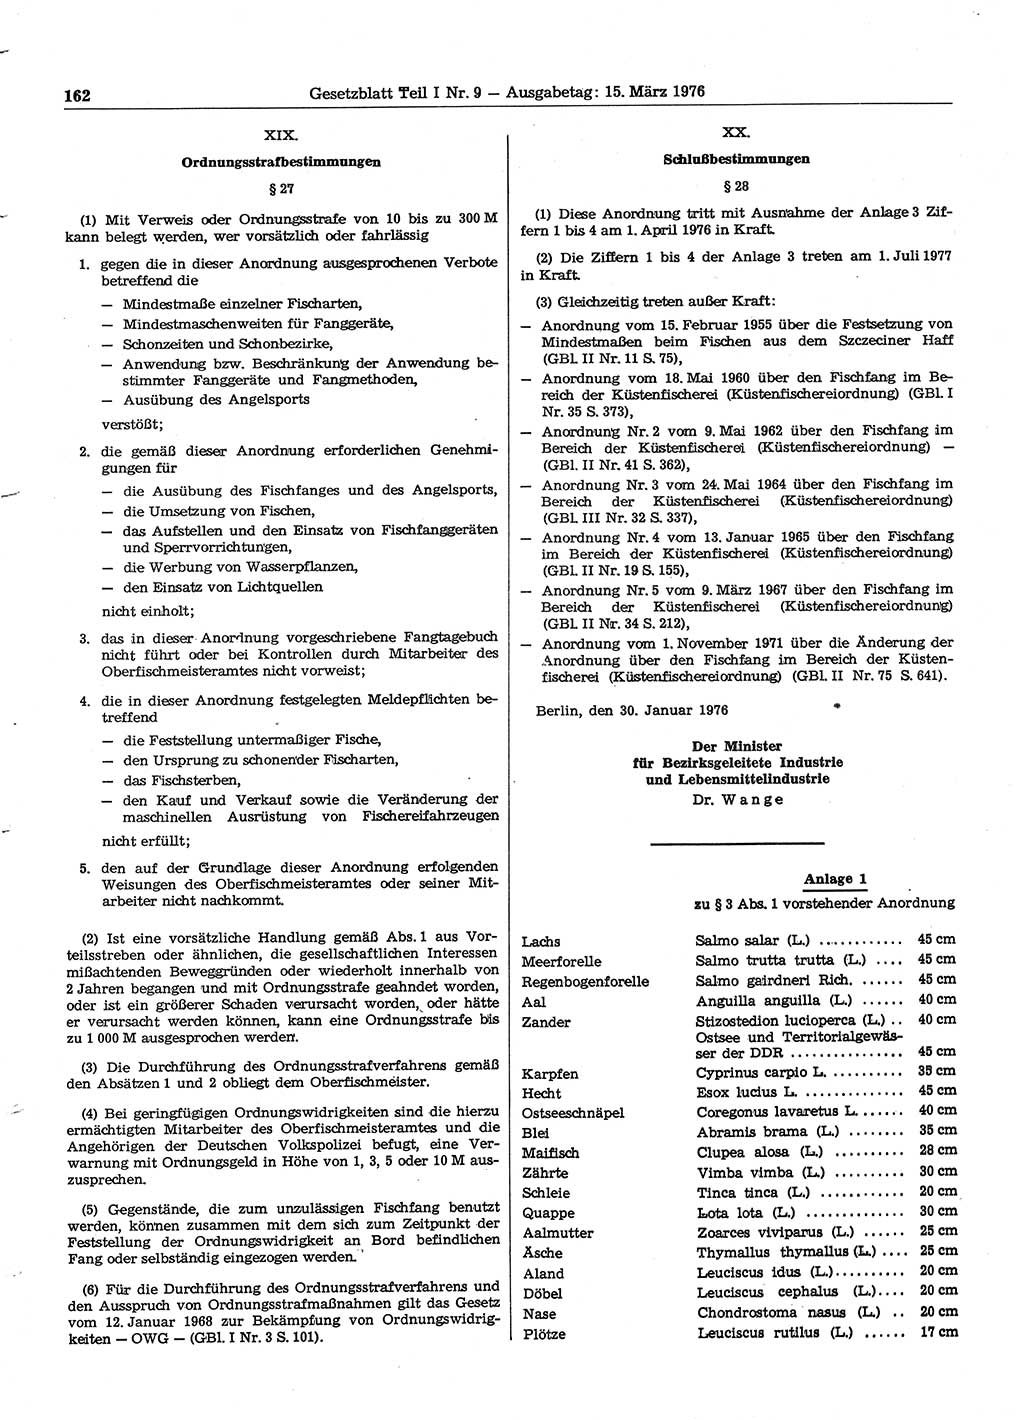 Gesetzblatt (GBl.) der Deutschen Demokratischen Republik (DDR) Teil Ⅰ 1976, Seite 162 (GBl. DDR Ⅰ 1976, S. 162)